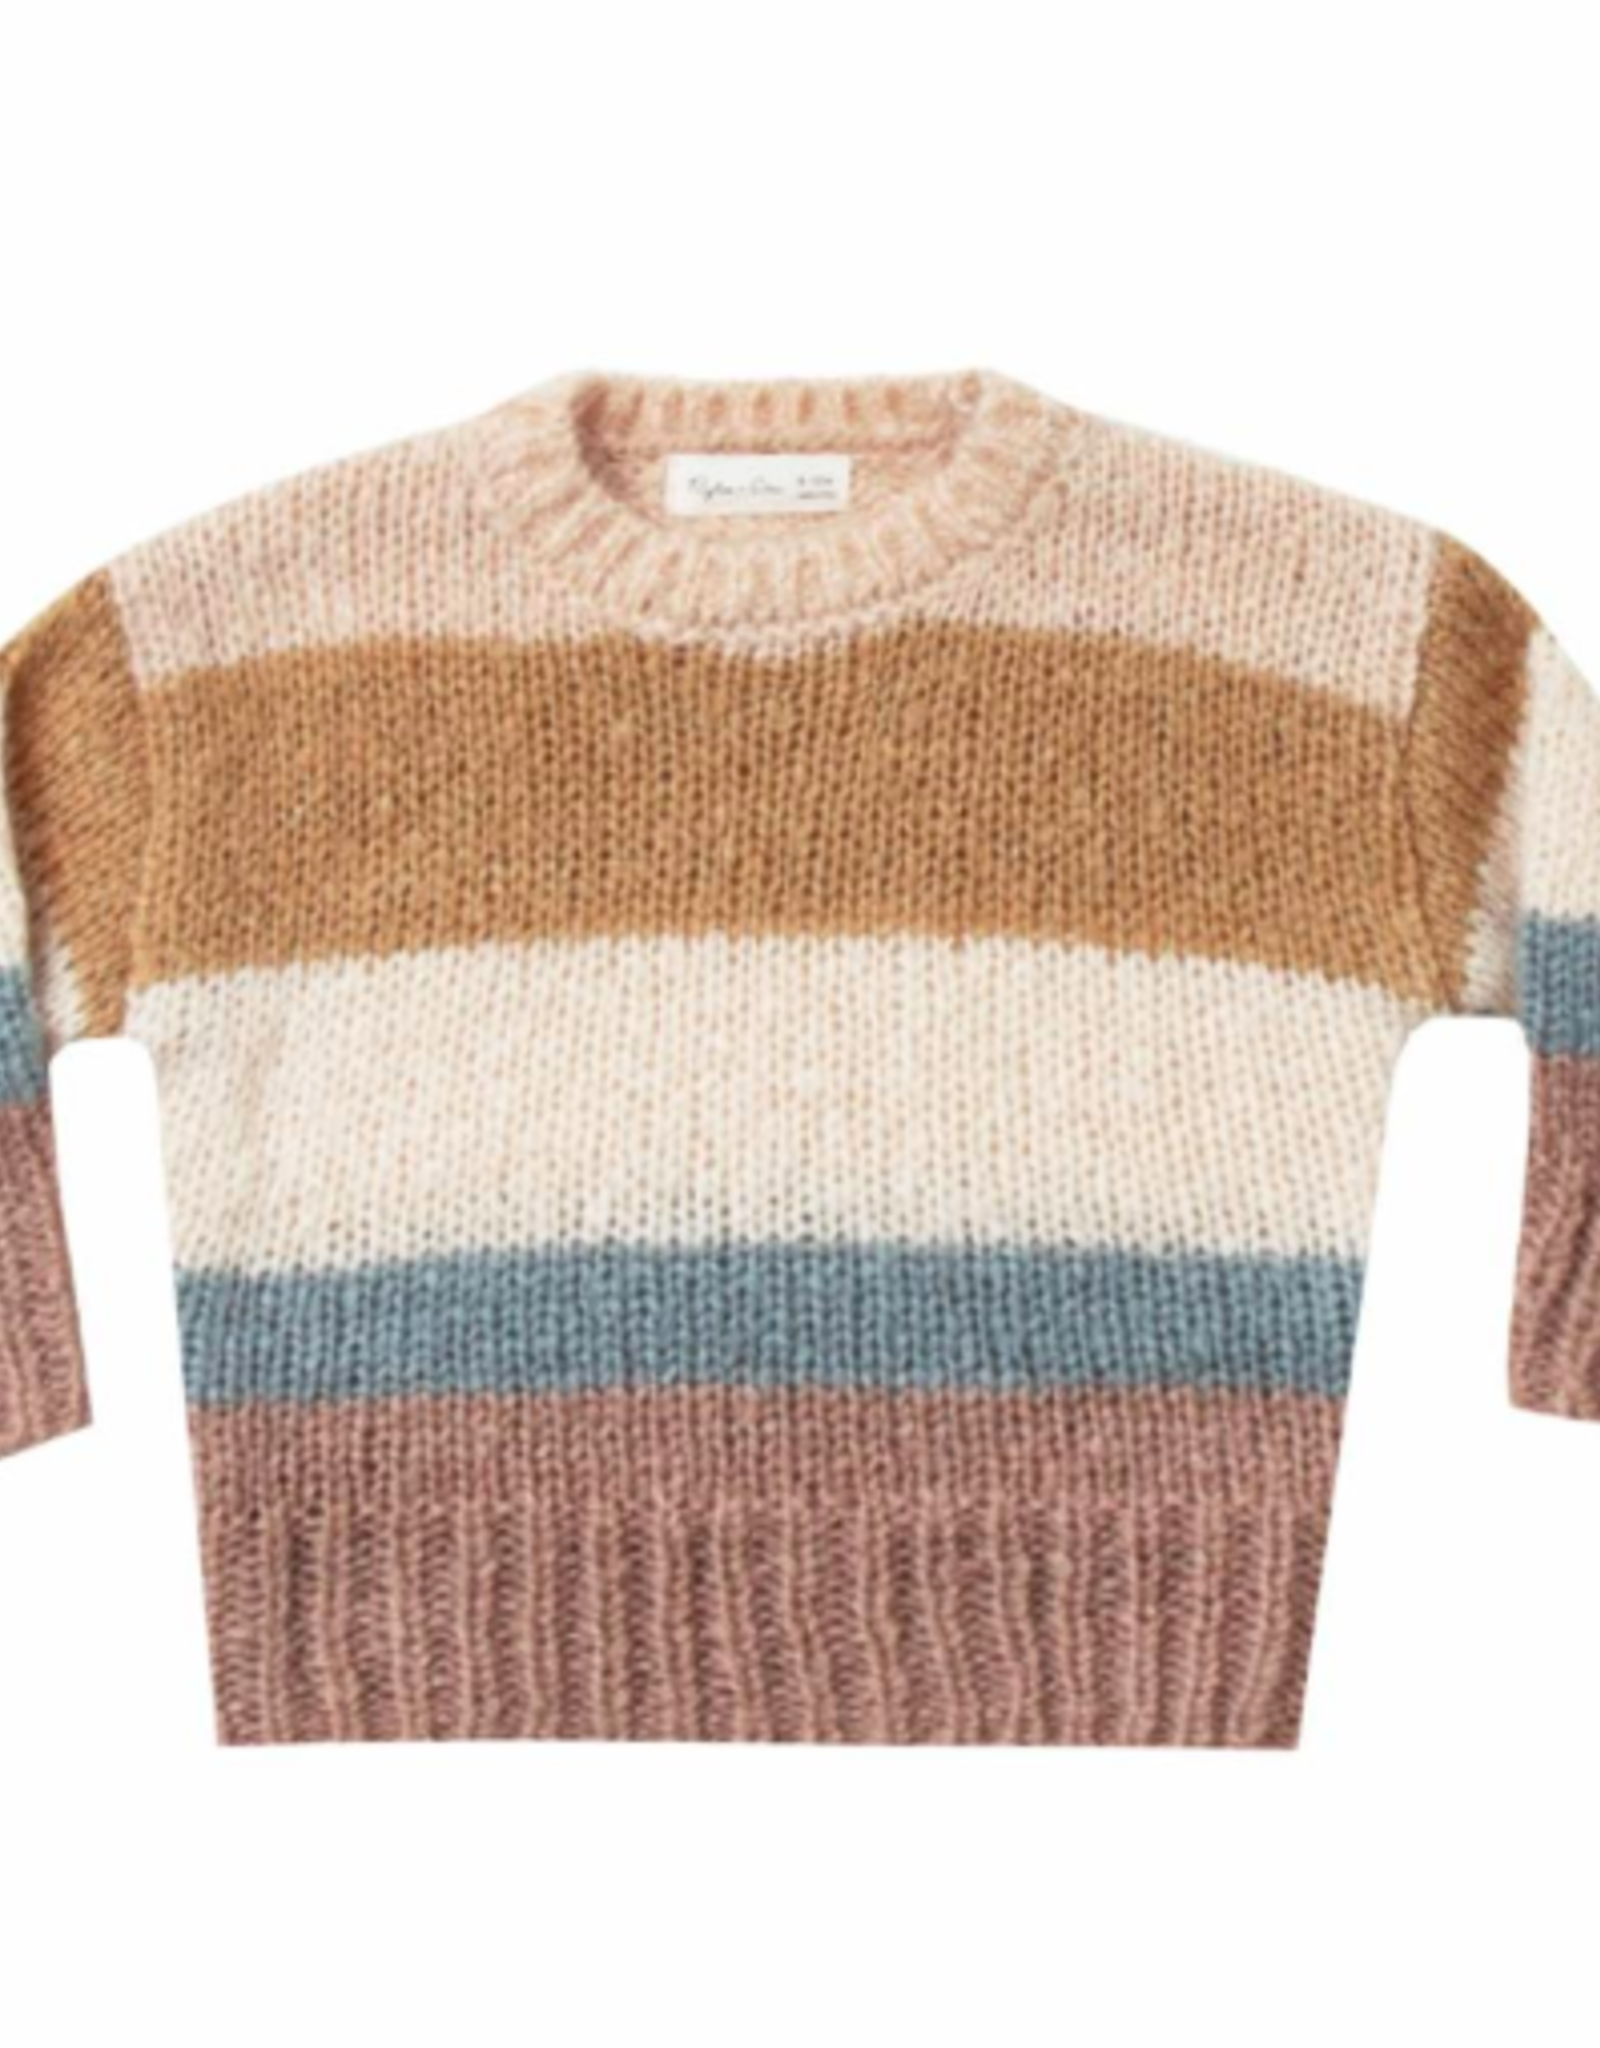 Stripe Aspen Sweater - From Marfa